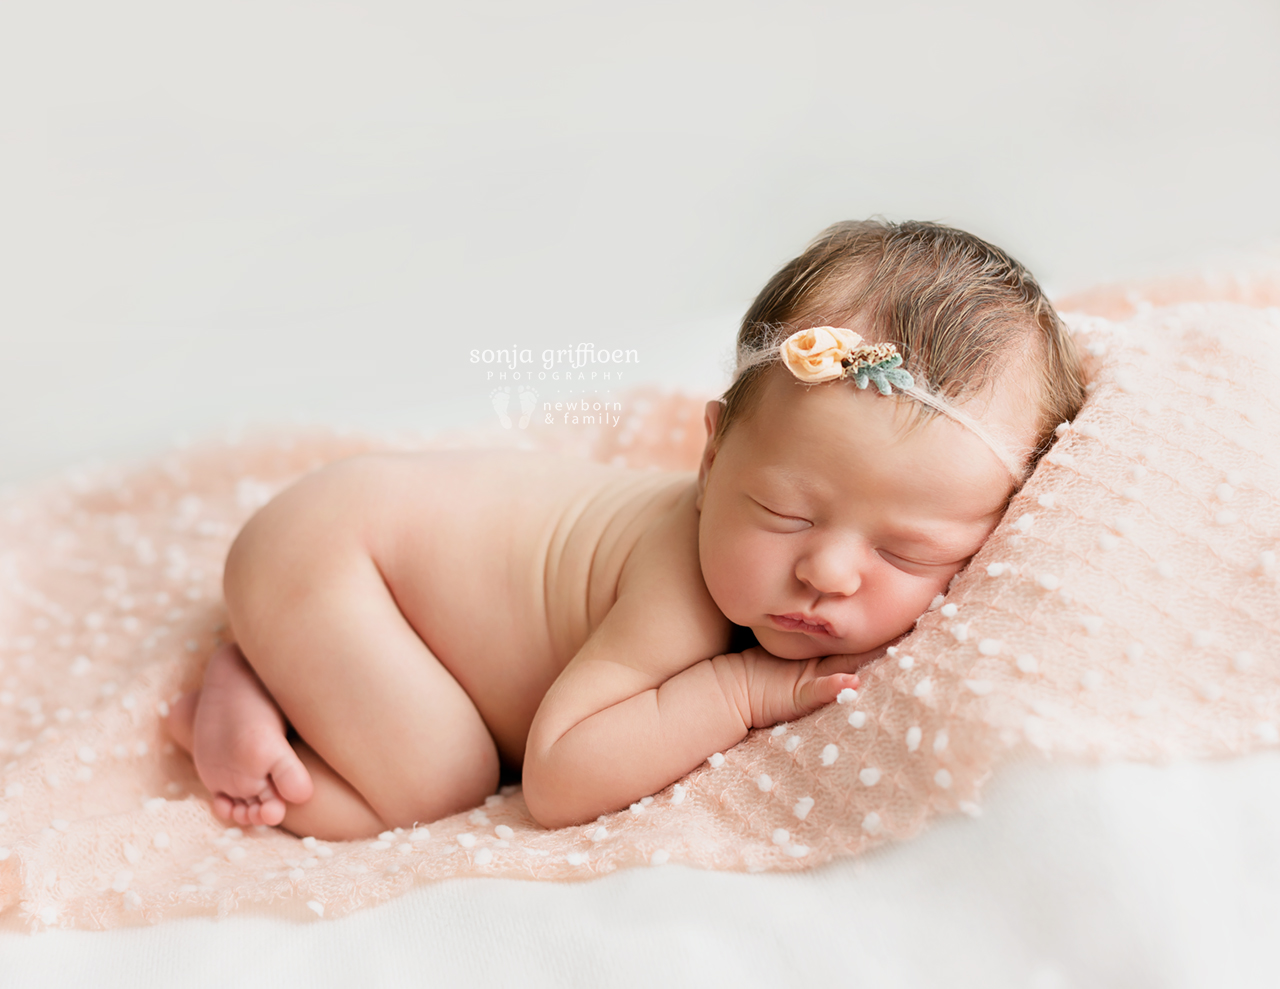 Delilah-Newborn-Brisbane-Newborn-Photographer-Sonja-Griffioen-12.jpg